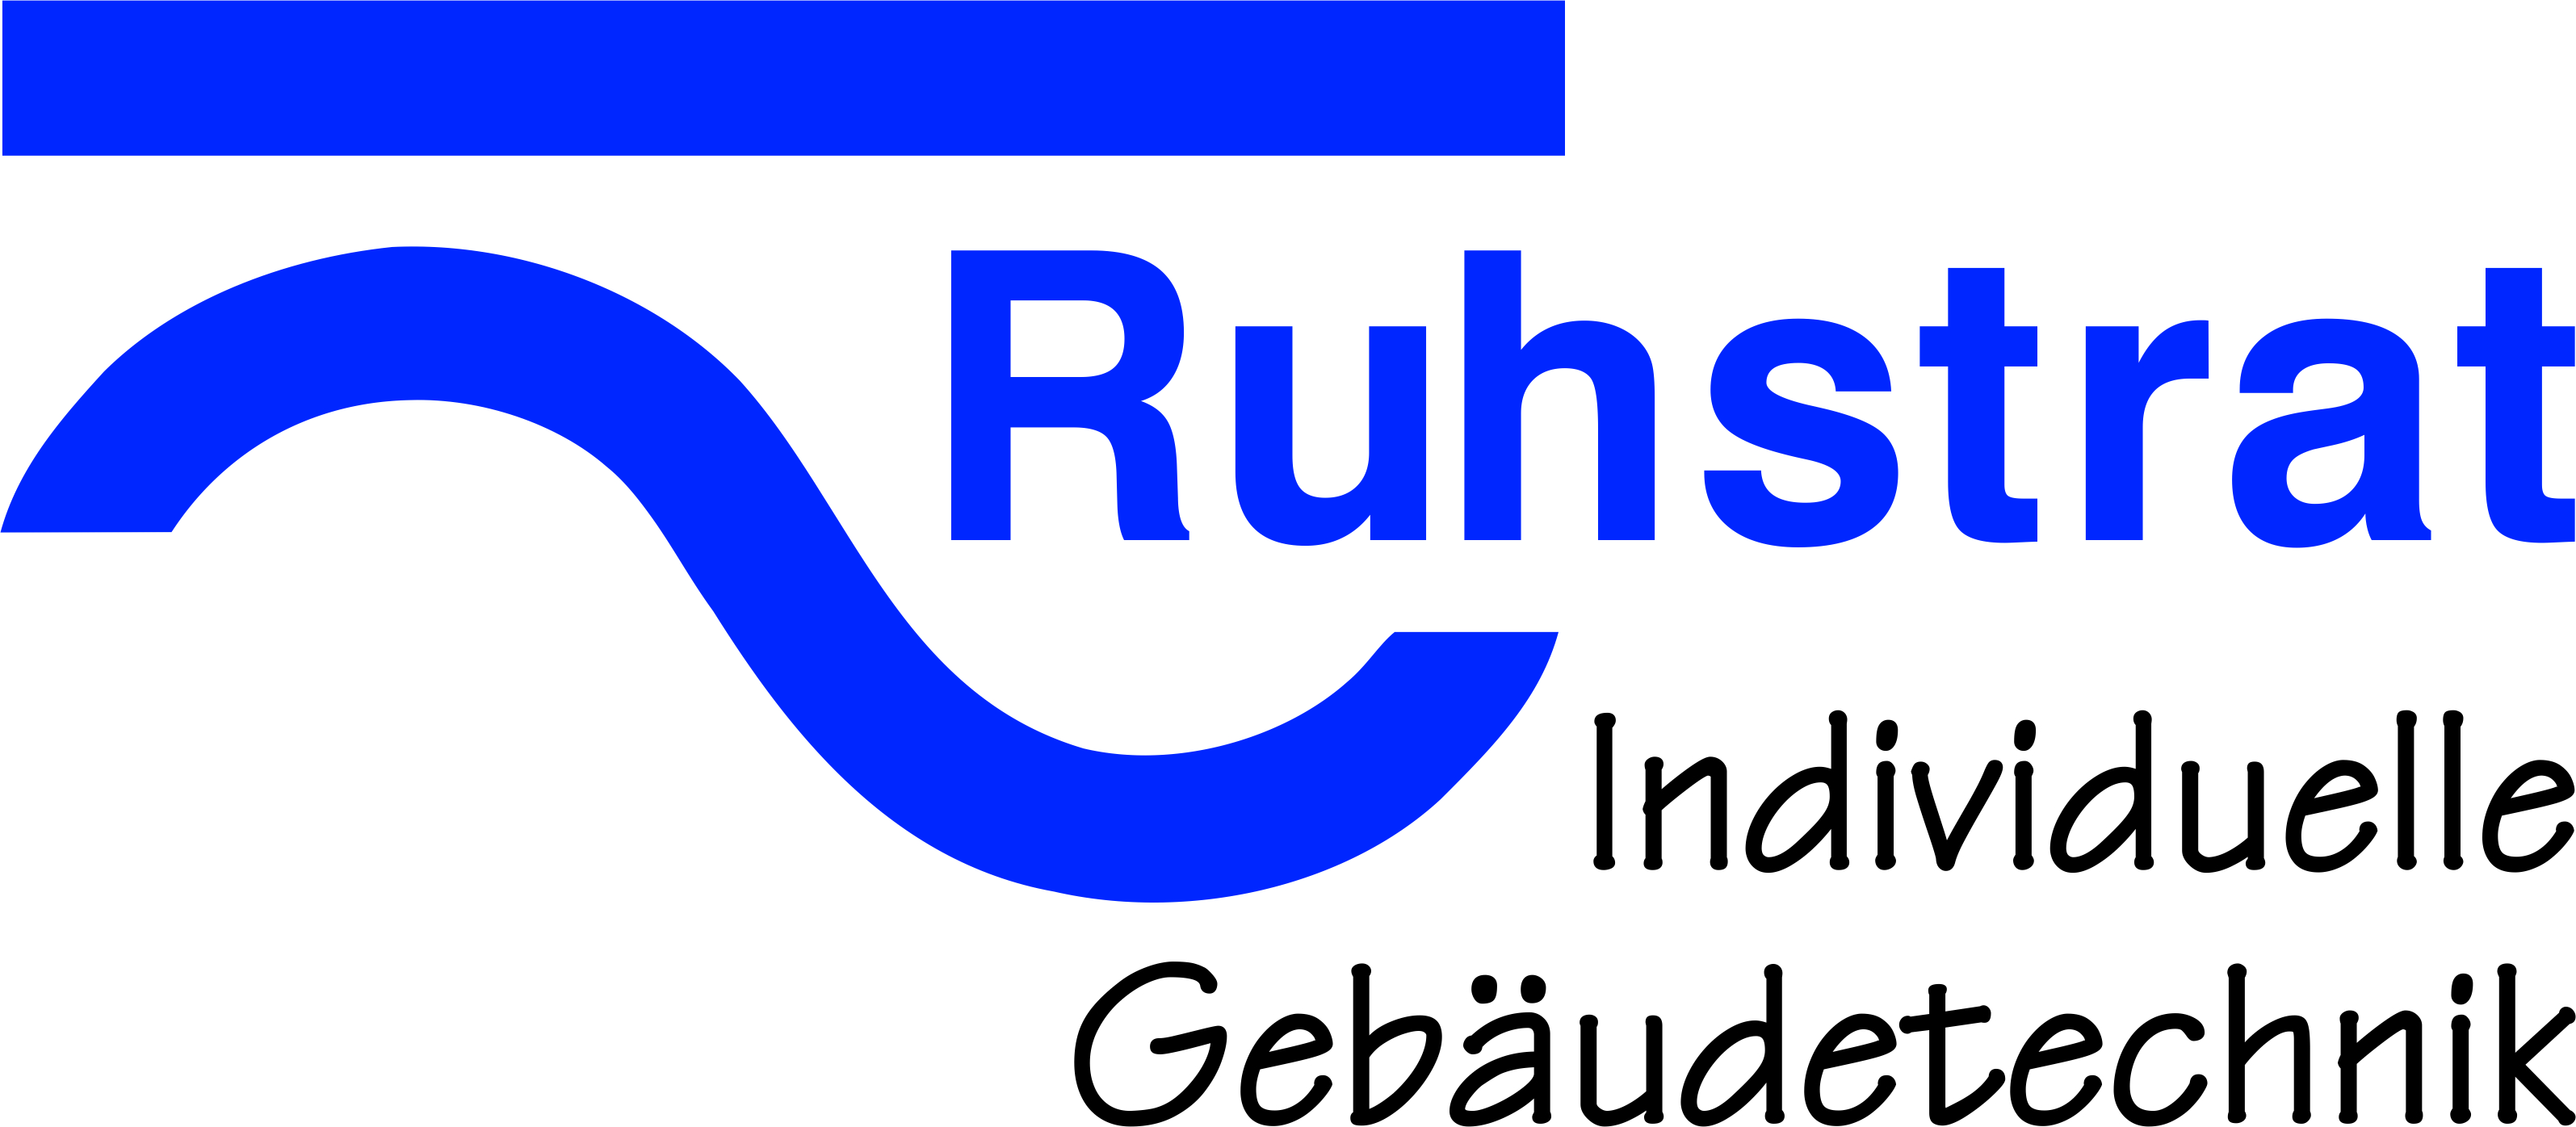 Logo Ruhstrat